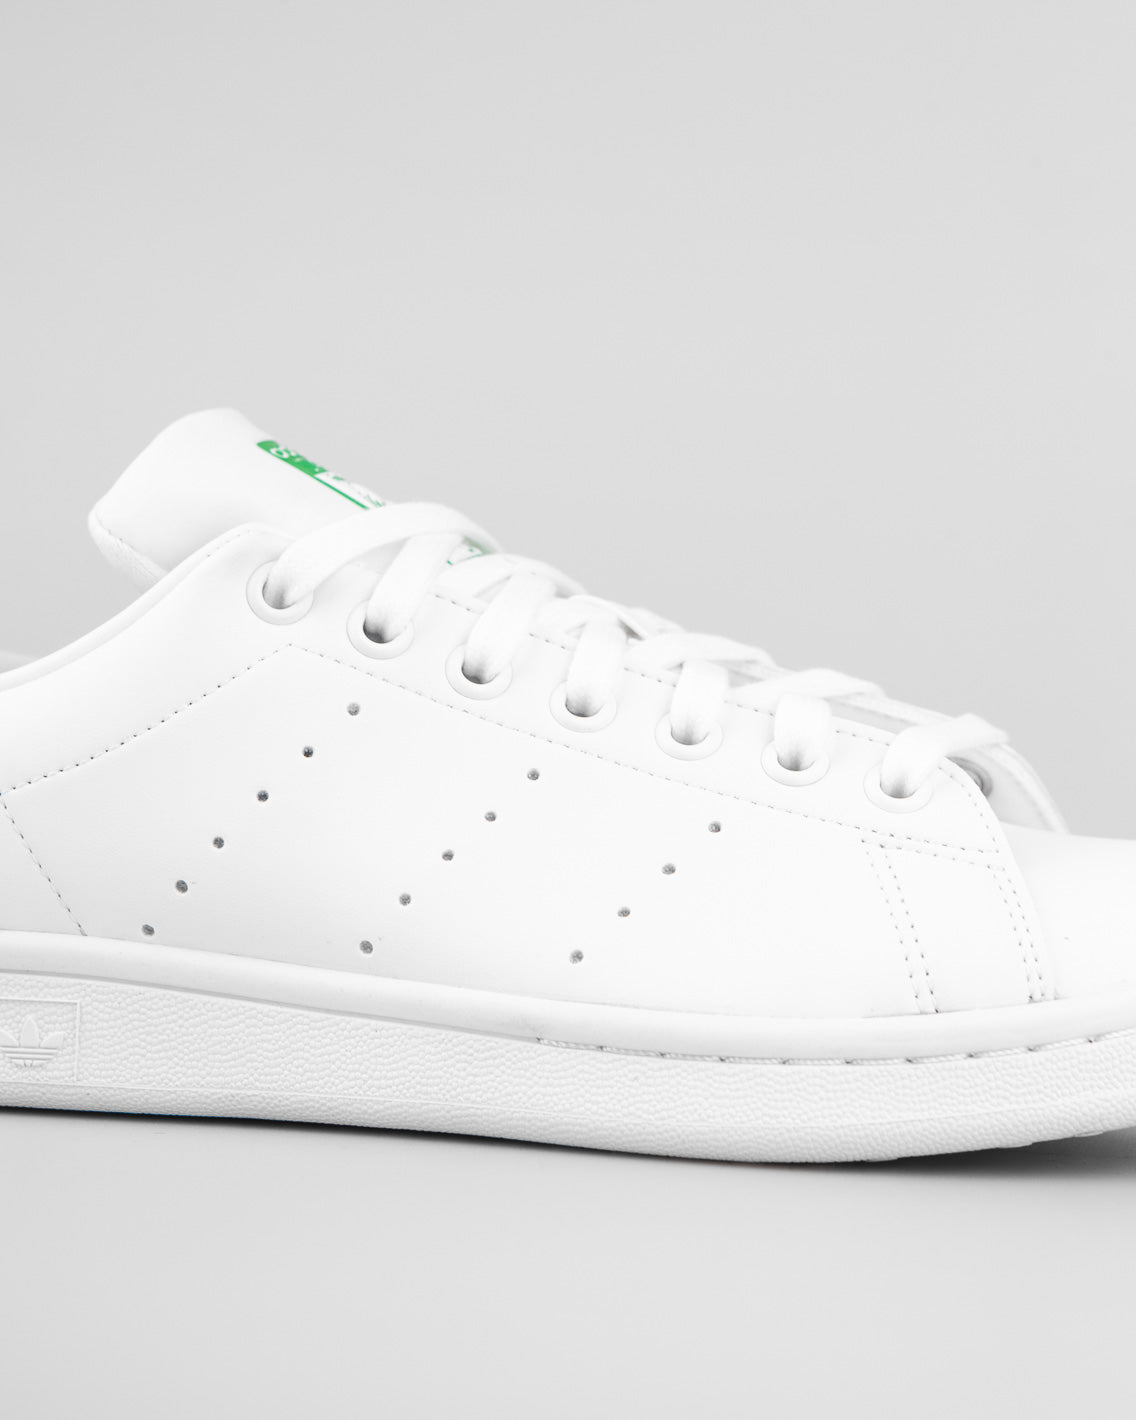 Adidas Originals - Stan Smith - White / White / Green